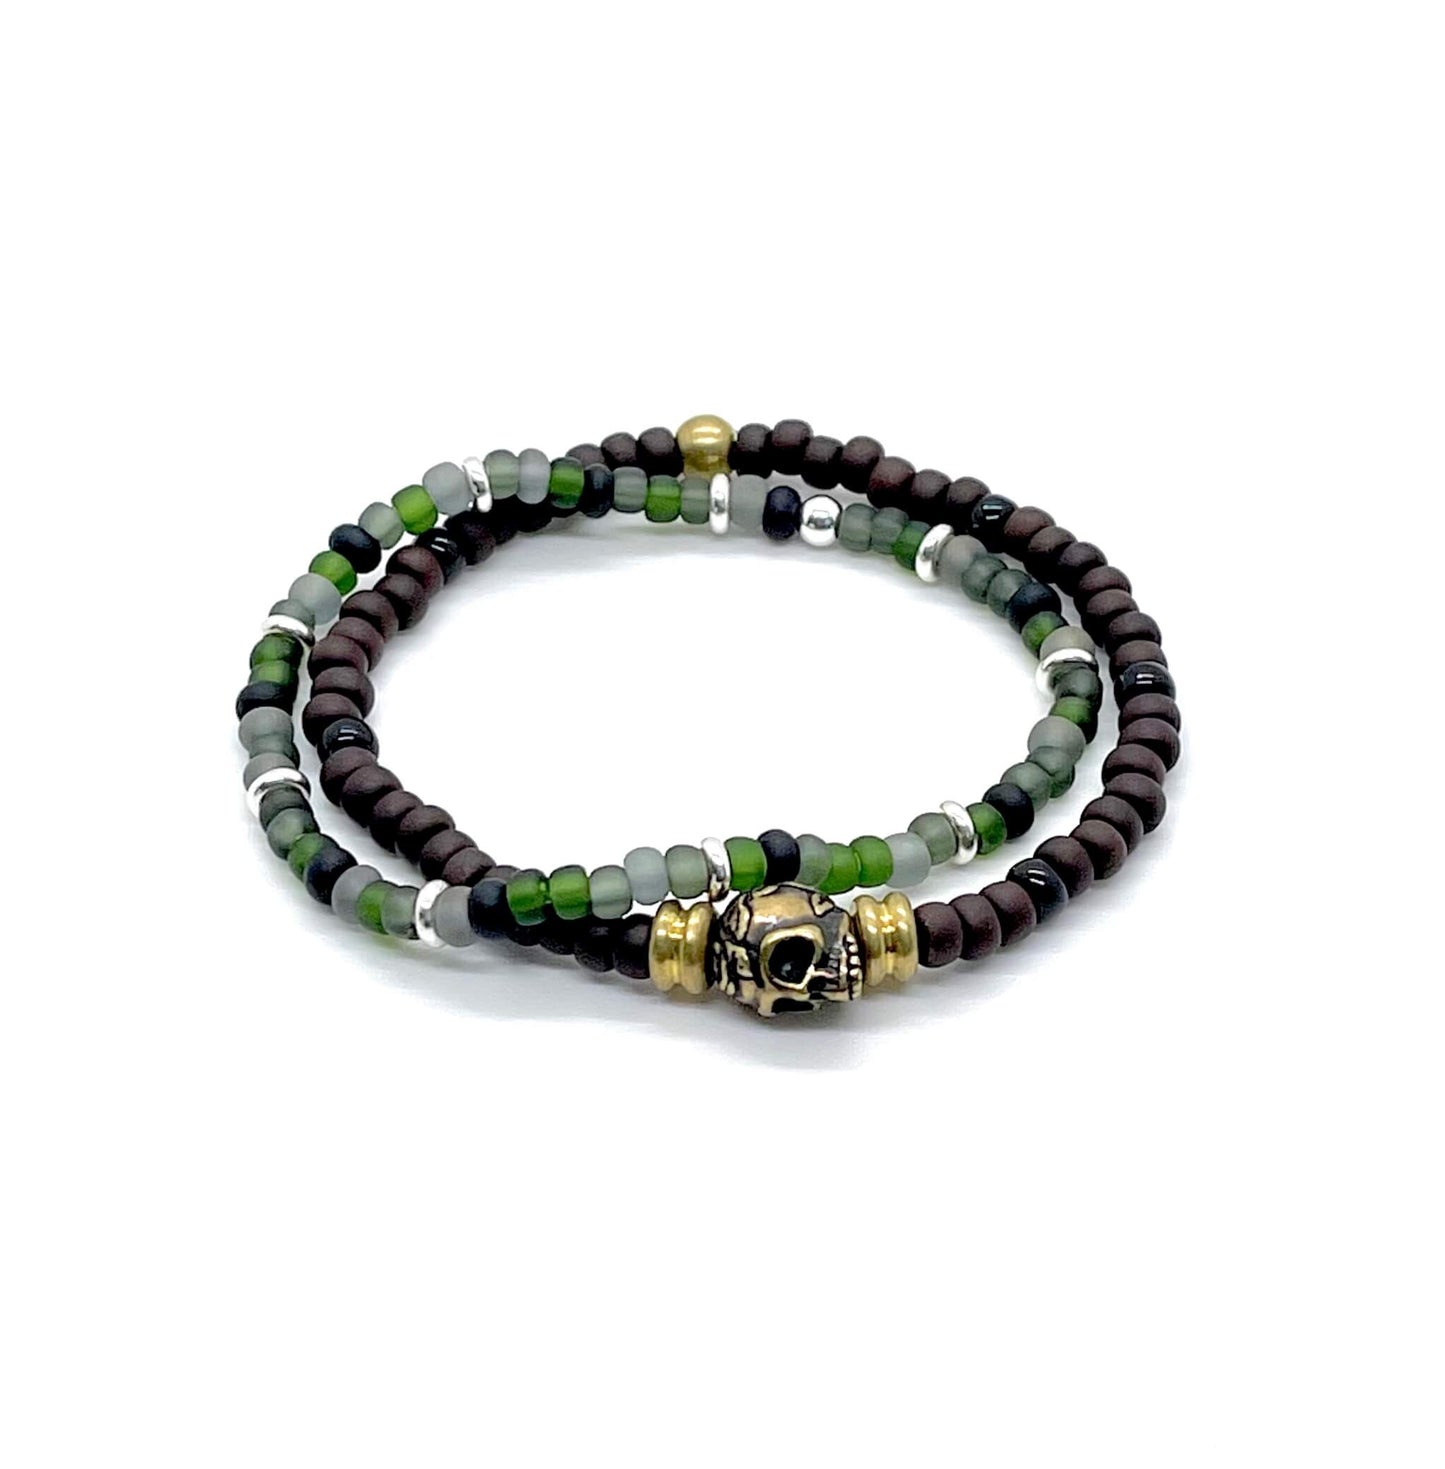 Men's skull bracelet set/2 stretch bracelets/Brown bracelet/Green bracelet/Men's thin bracelets.